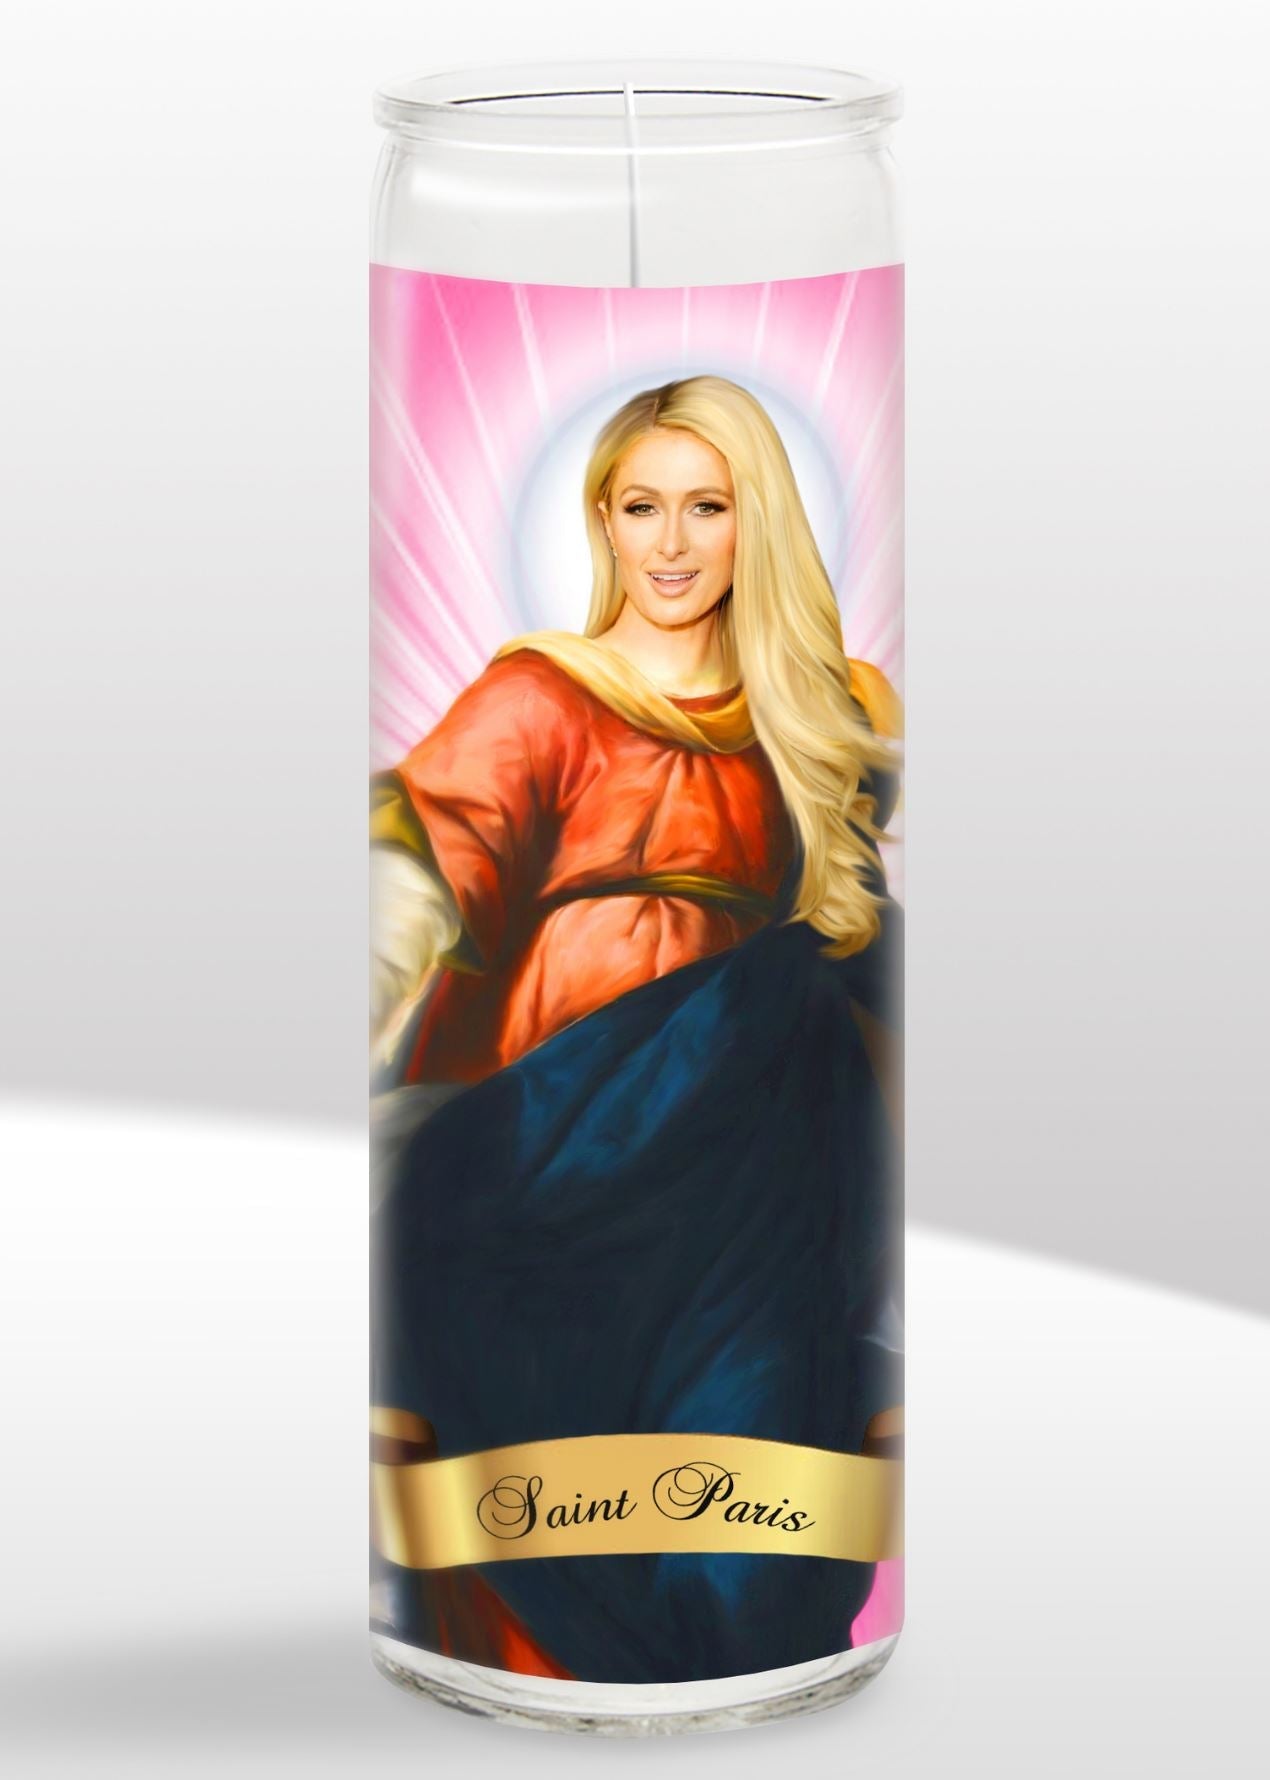 Paris Hilton Candle